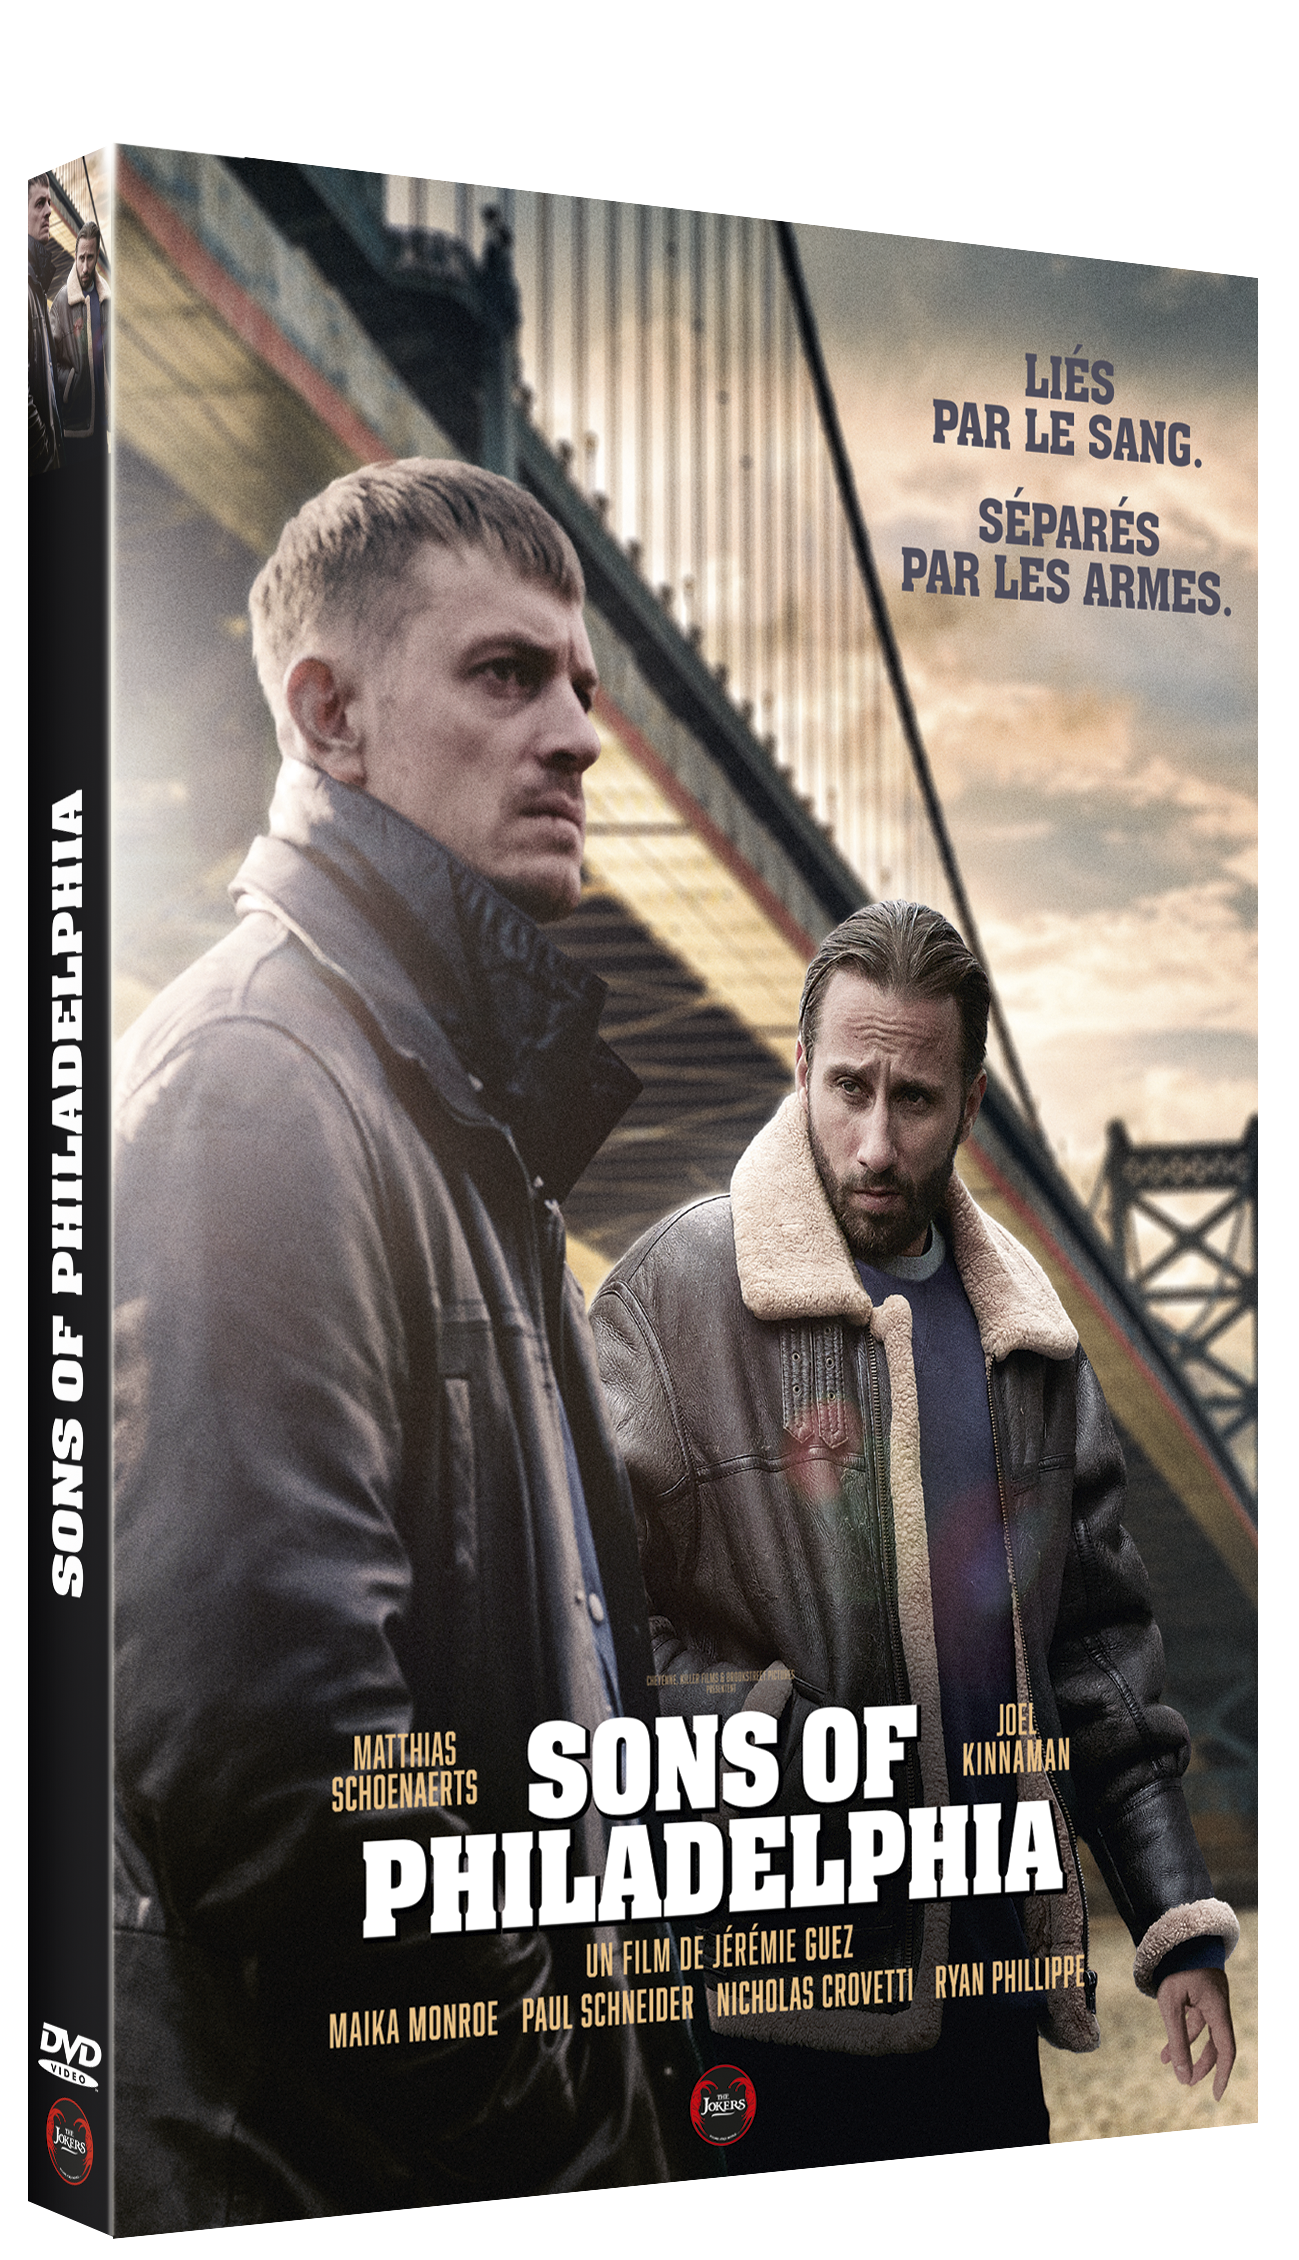 DVD "Sons of Philadelphia"